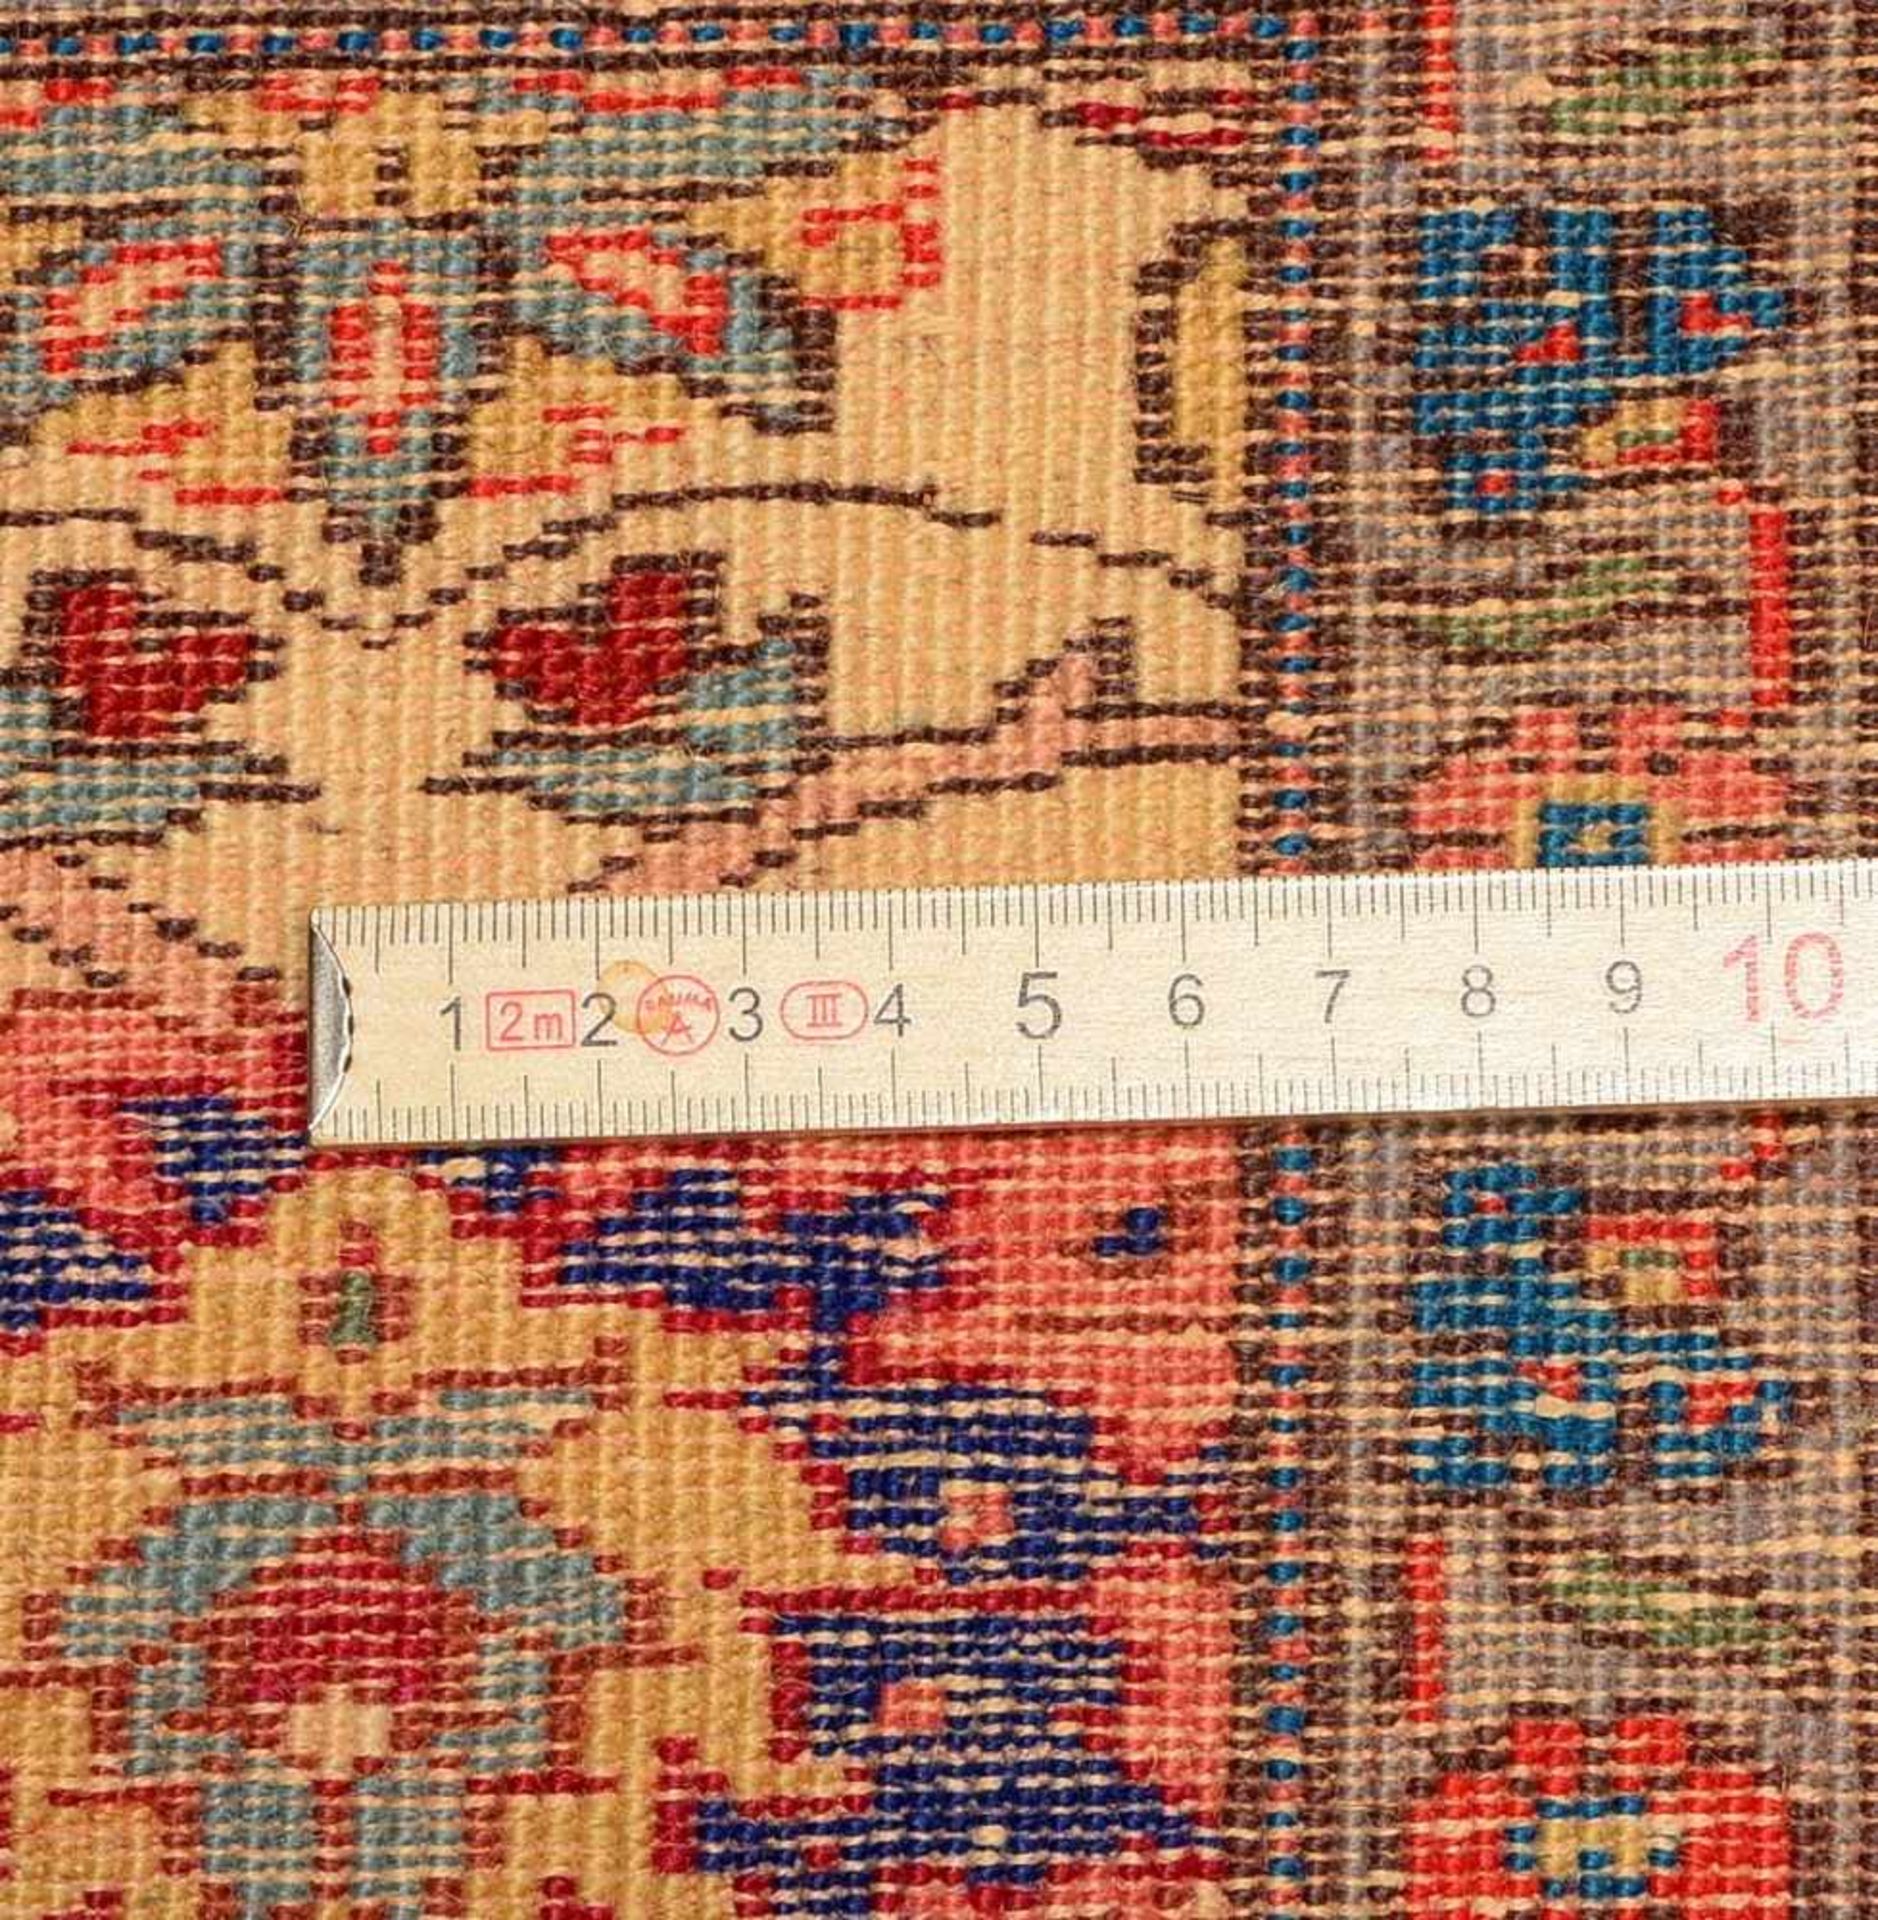 Kayseri-Orientteppich, antik/um 1920, hellgrundiger durchgemusterter Fond; Maße 294 x 196 cm - Bild 2 aus 3